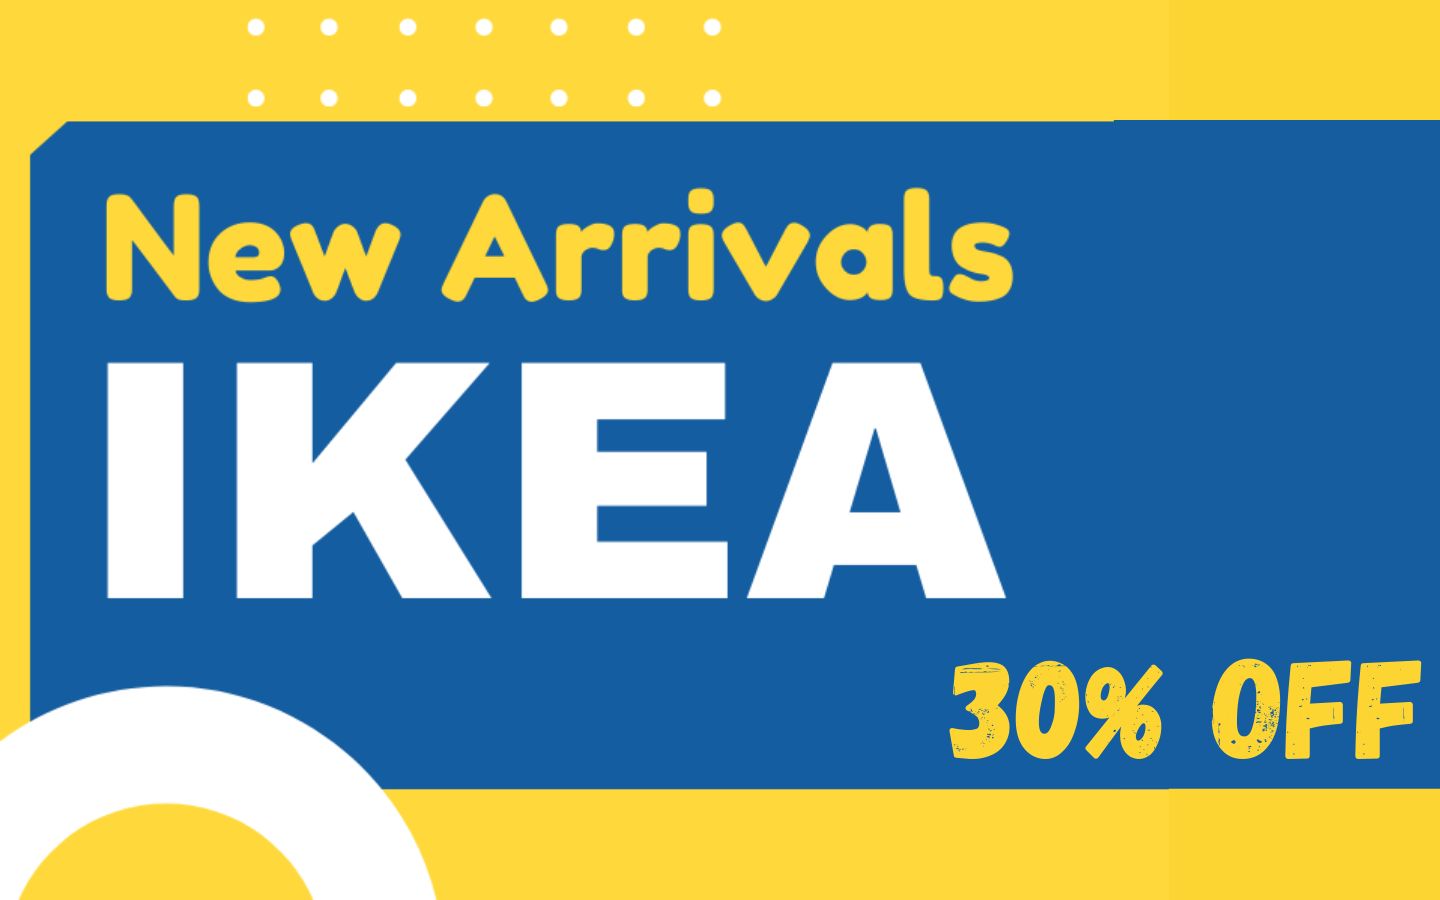 IKEA new arrivals